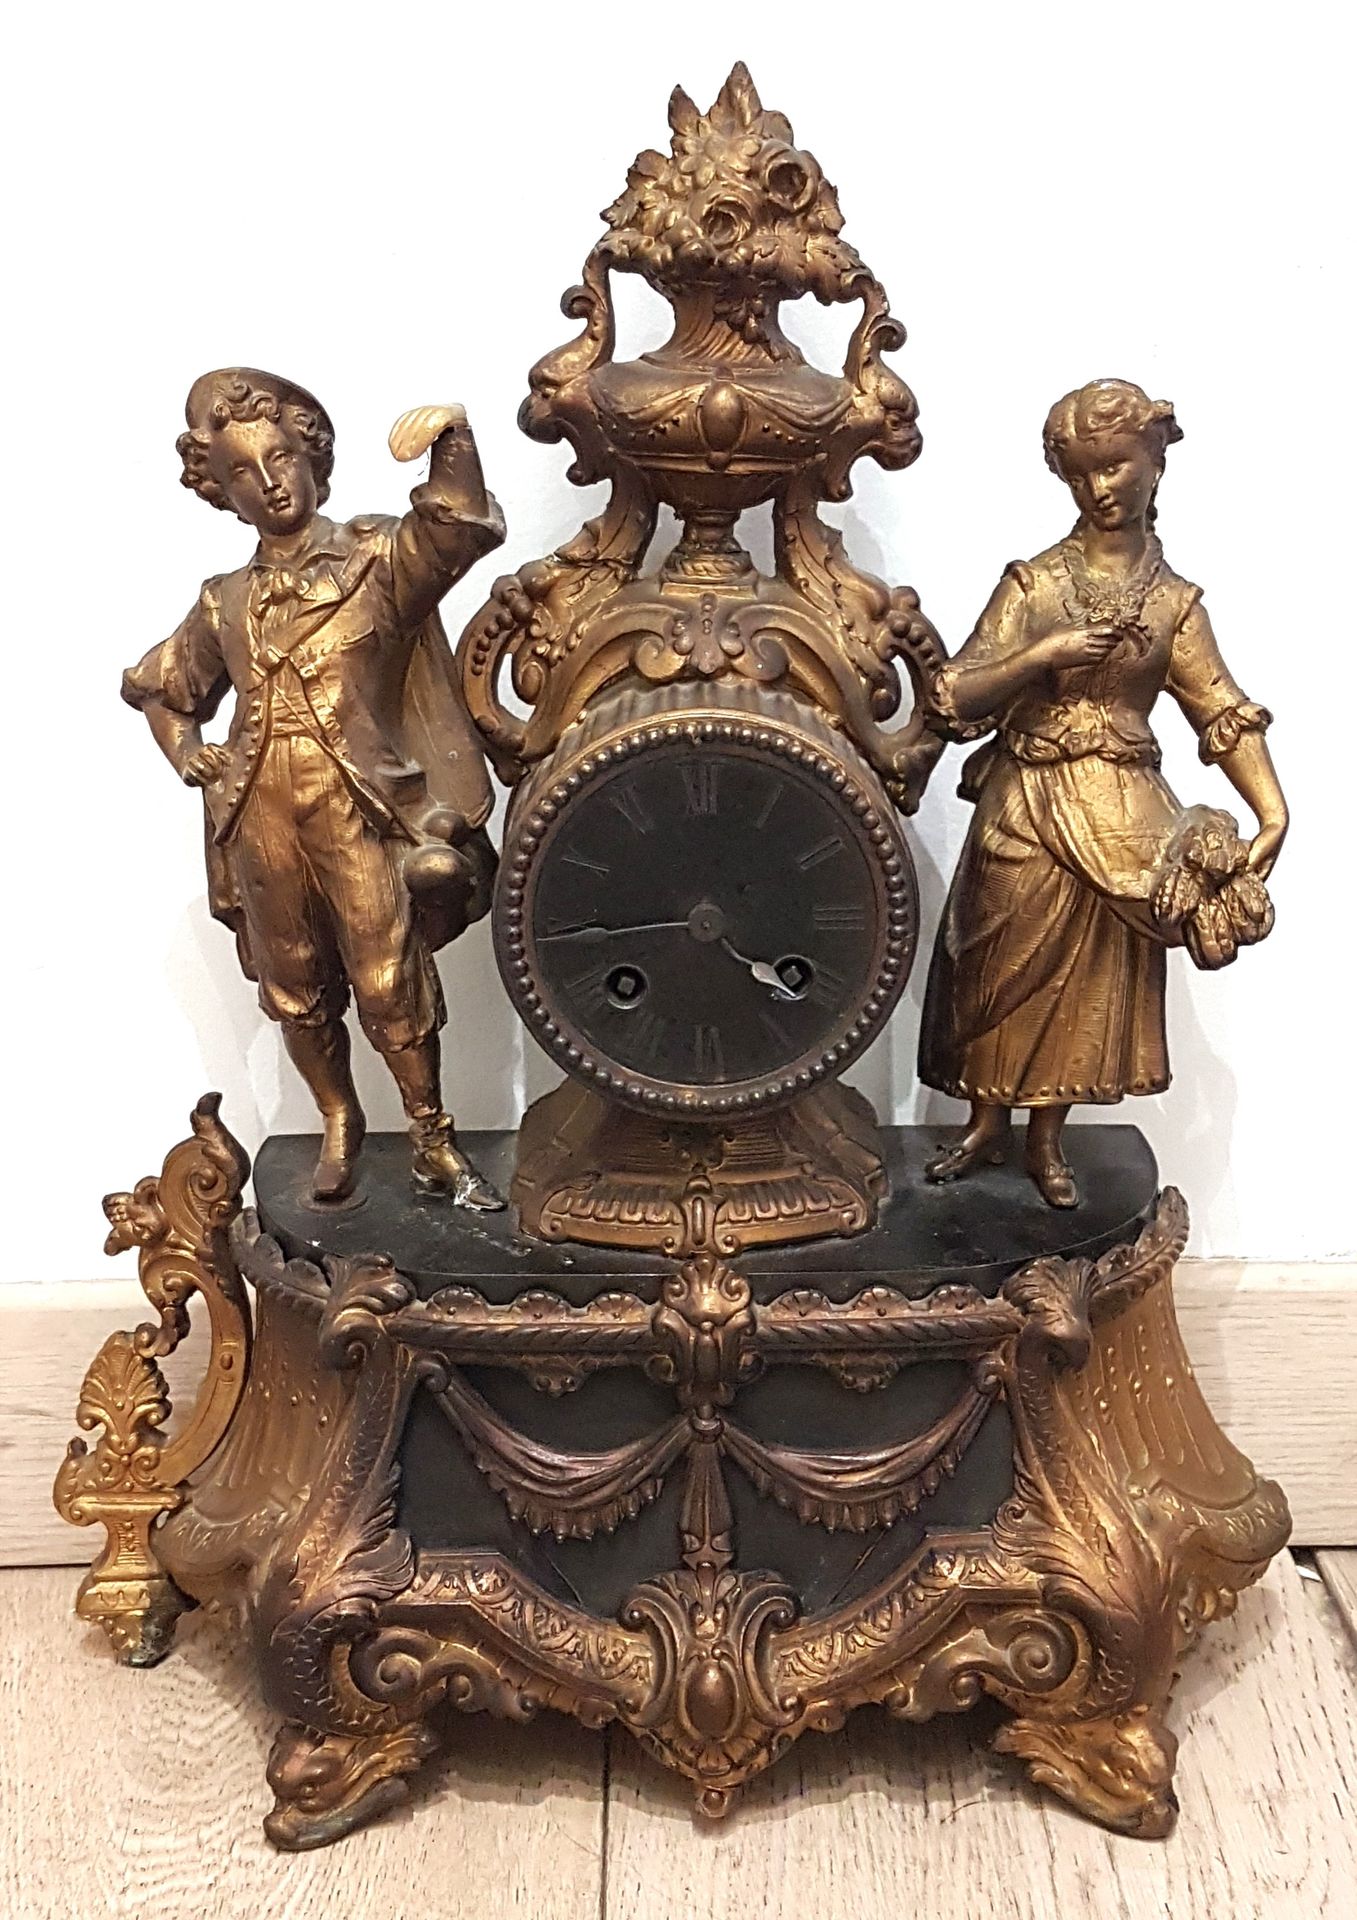 Null 雷古拉钟，黑色表盘，罗马数字，顶部是一个丰饶的花瓶，边框是两个人物，底座装饰有帷幔图案、徽章和卷轴，四脚站立，两个正面装饰有海豚头。
18 世纪风格 &hellip;